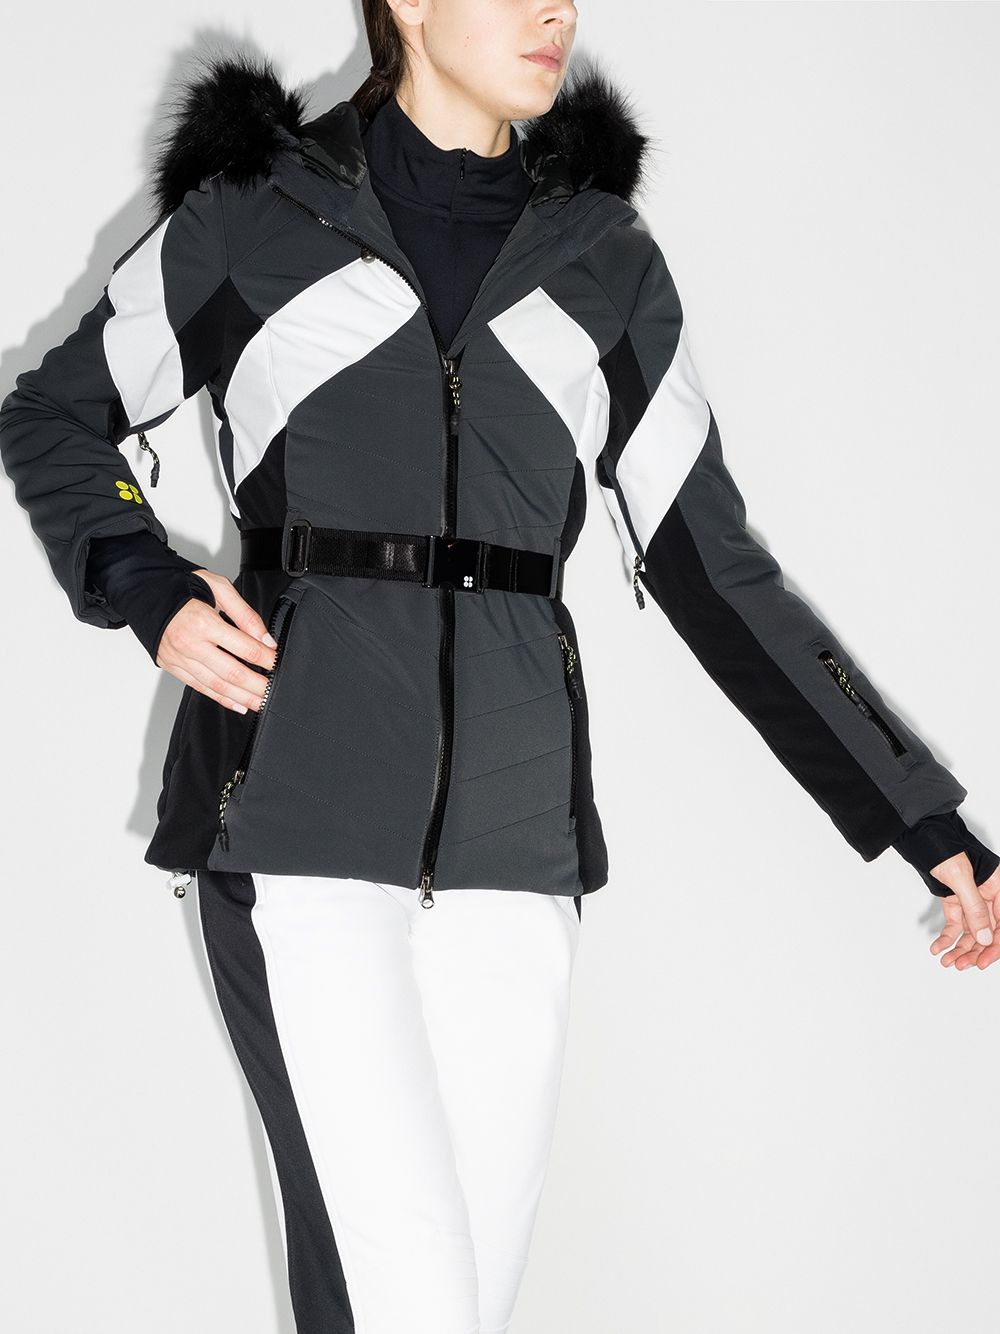 фото Sweaty betty лыжная куртка с капюшоном и вставками